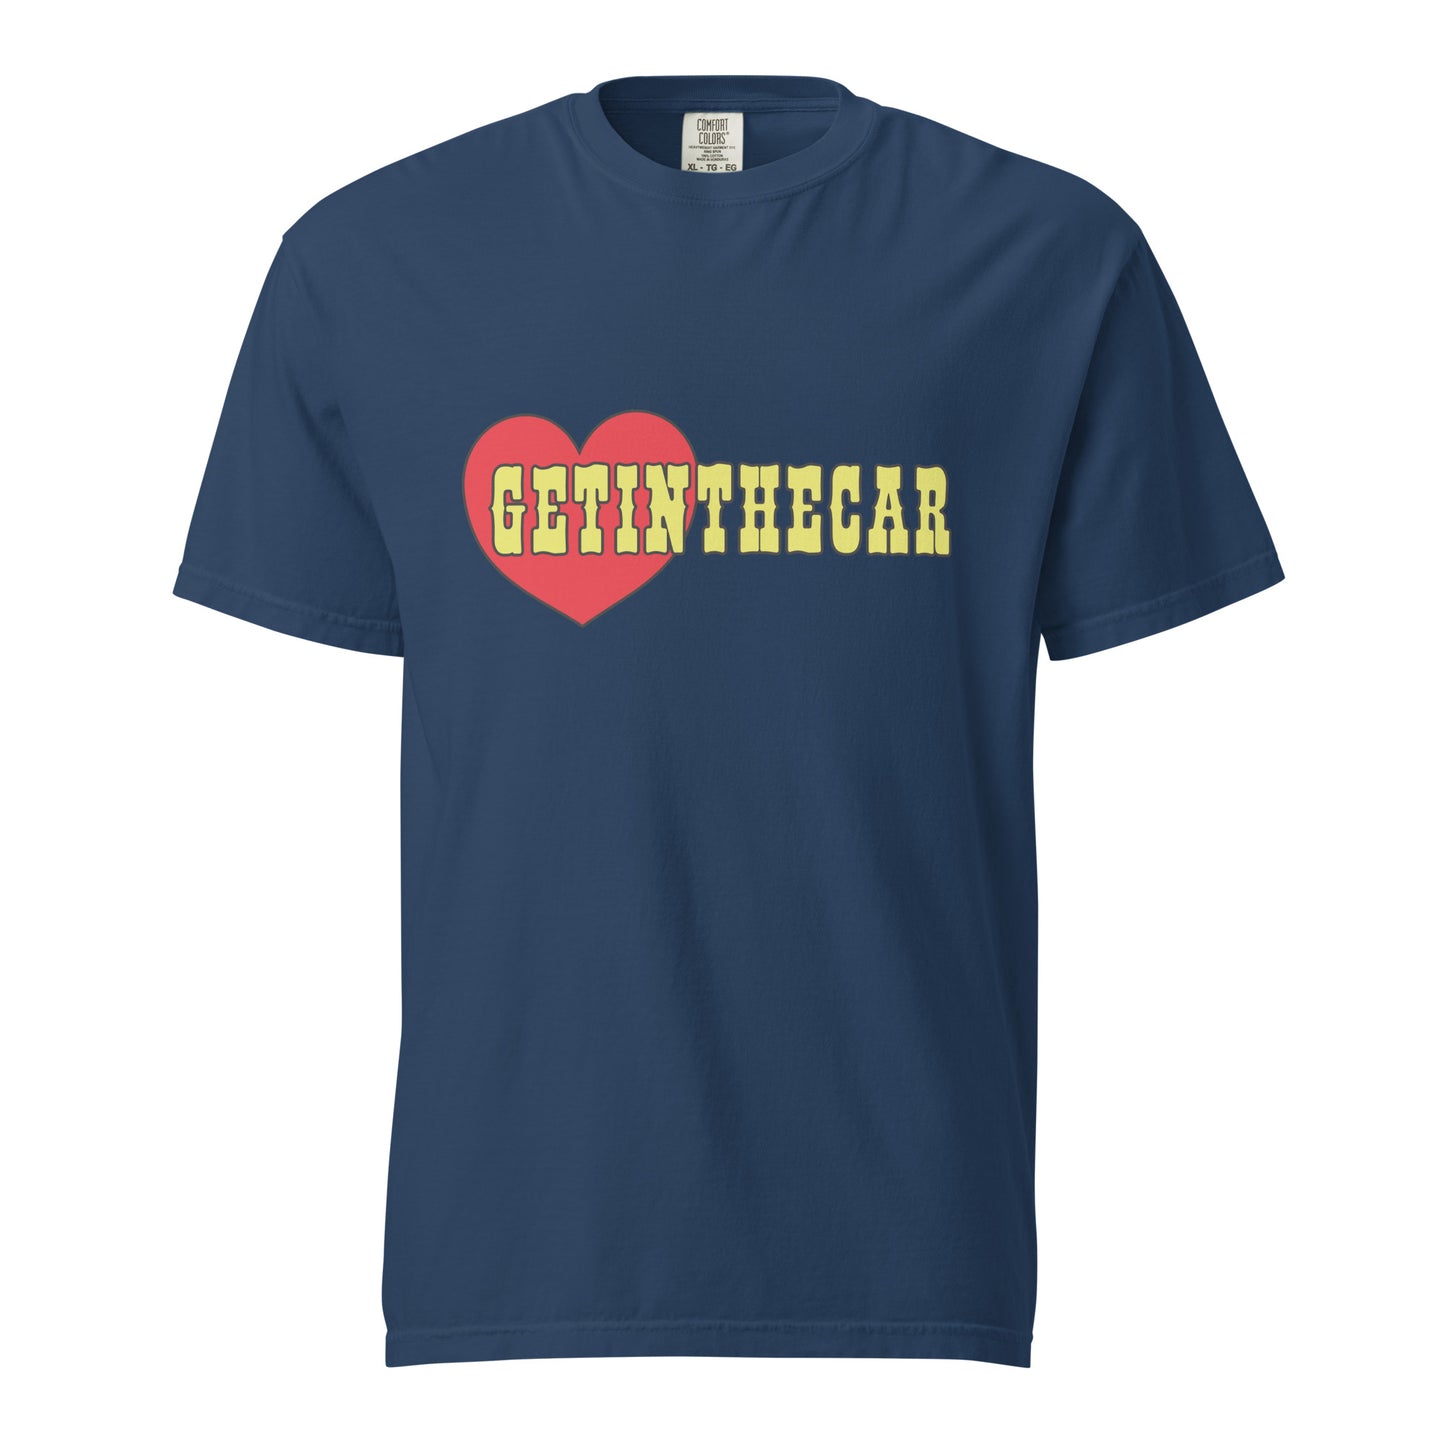 Getinthecar Hooker T-Shirt